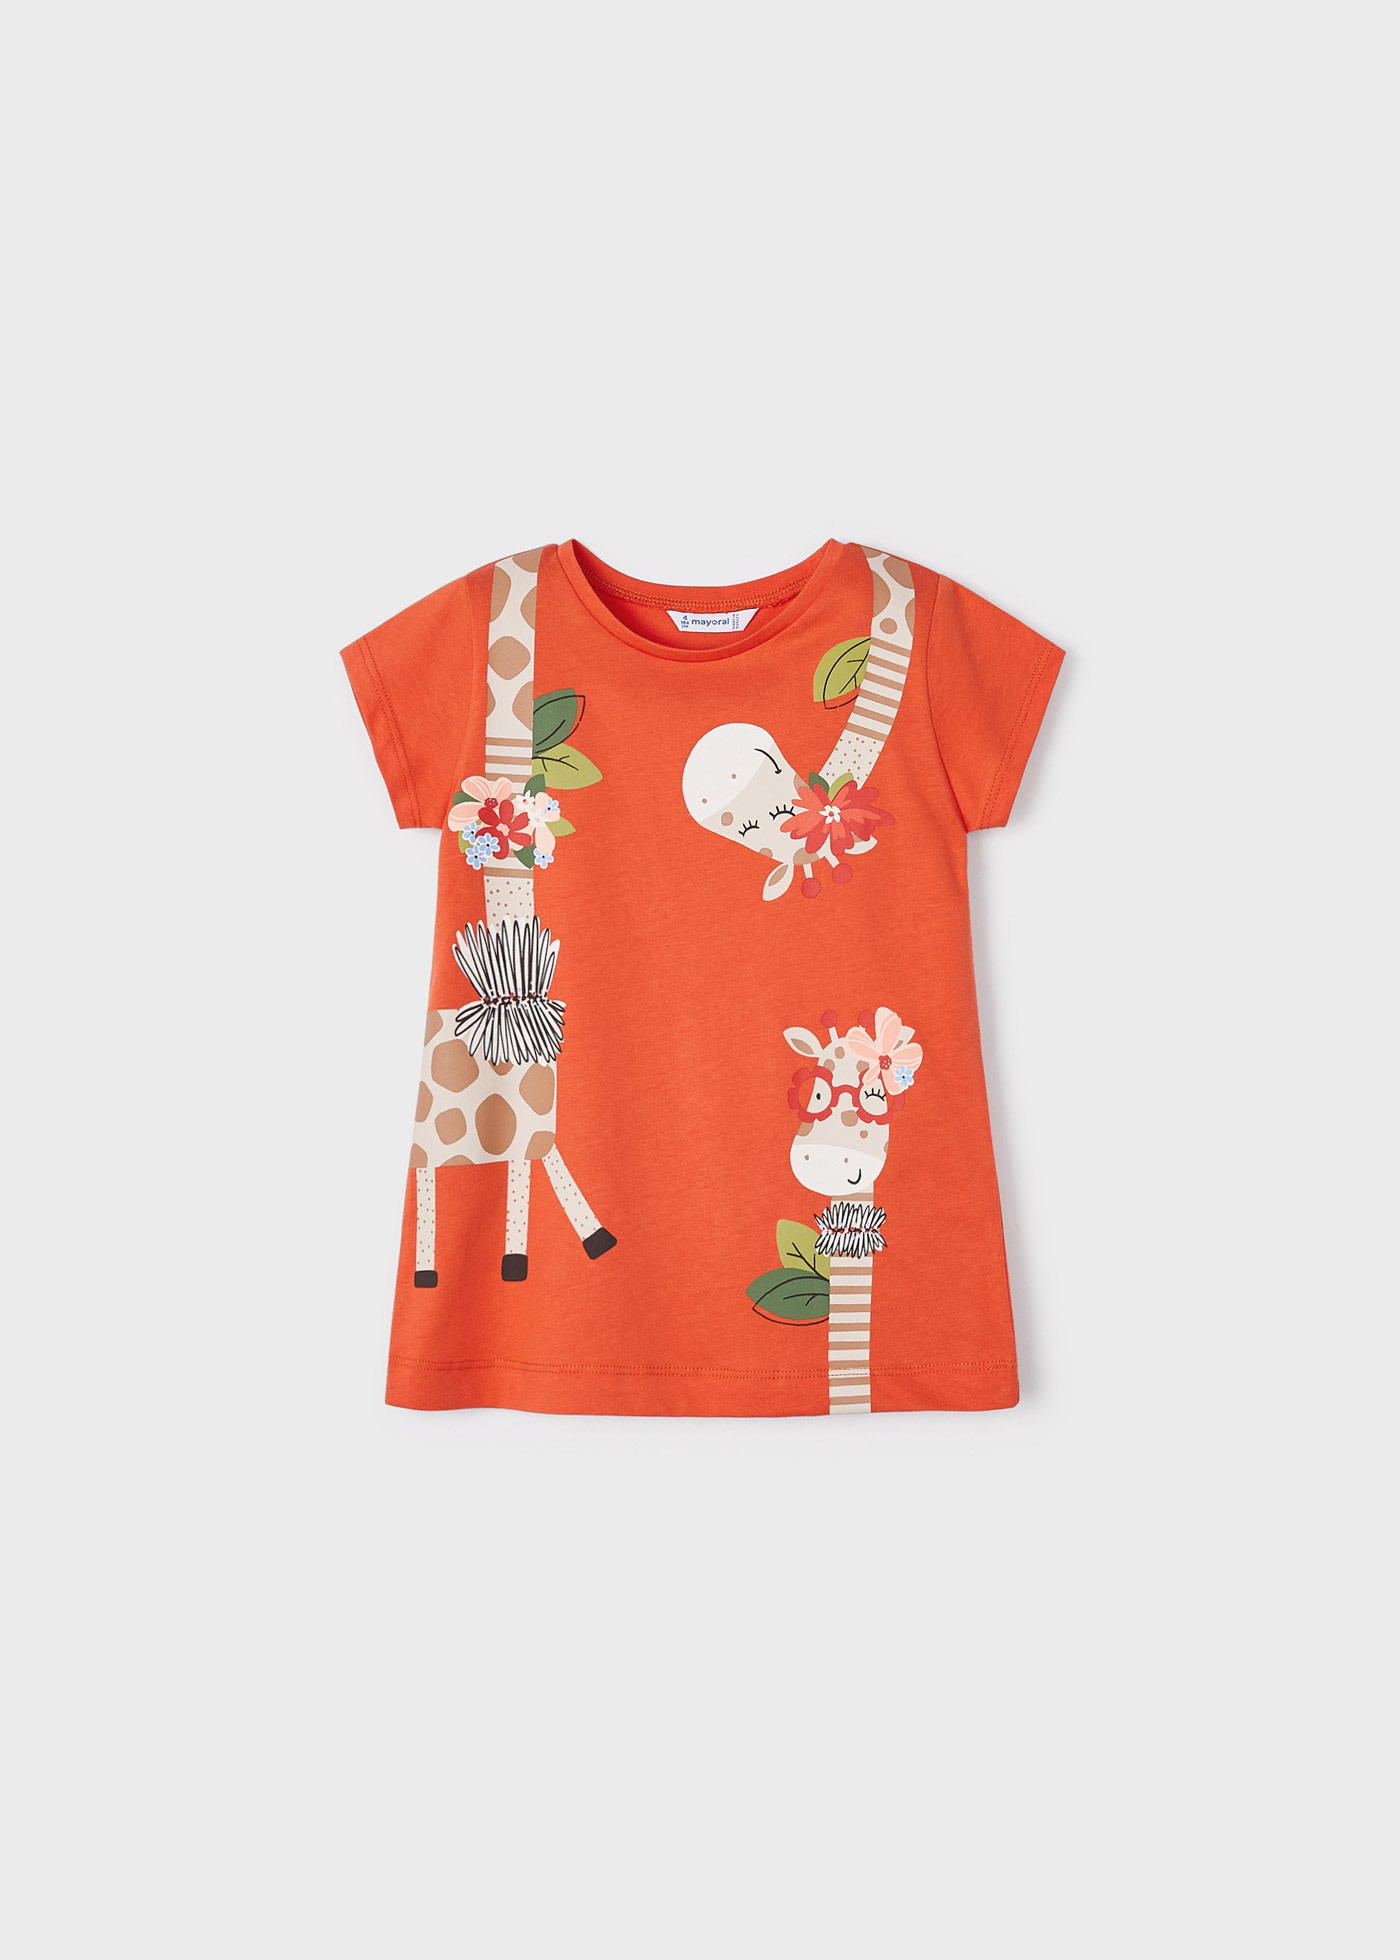 Camiseta naranja para niña